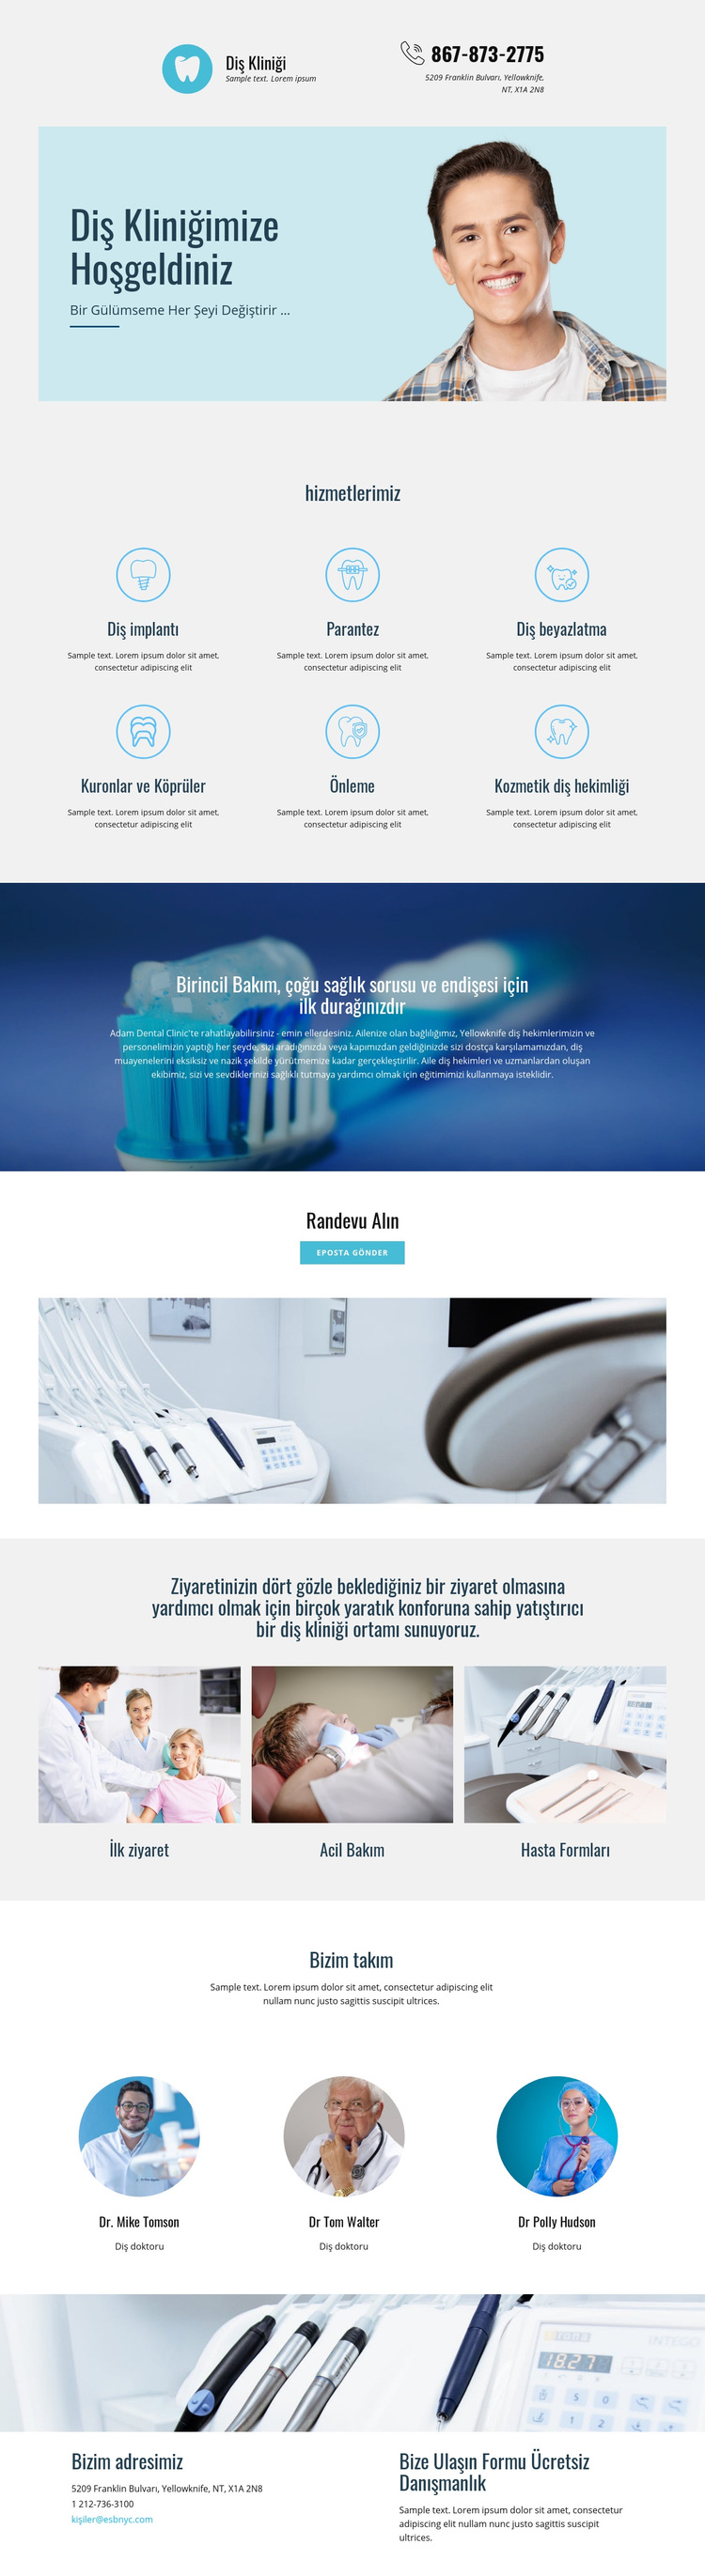 Diş hekimliği kliniği WordPress Teması